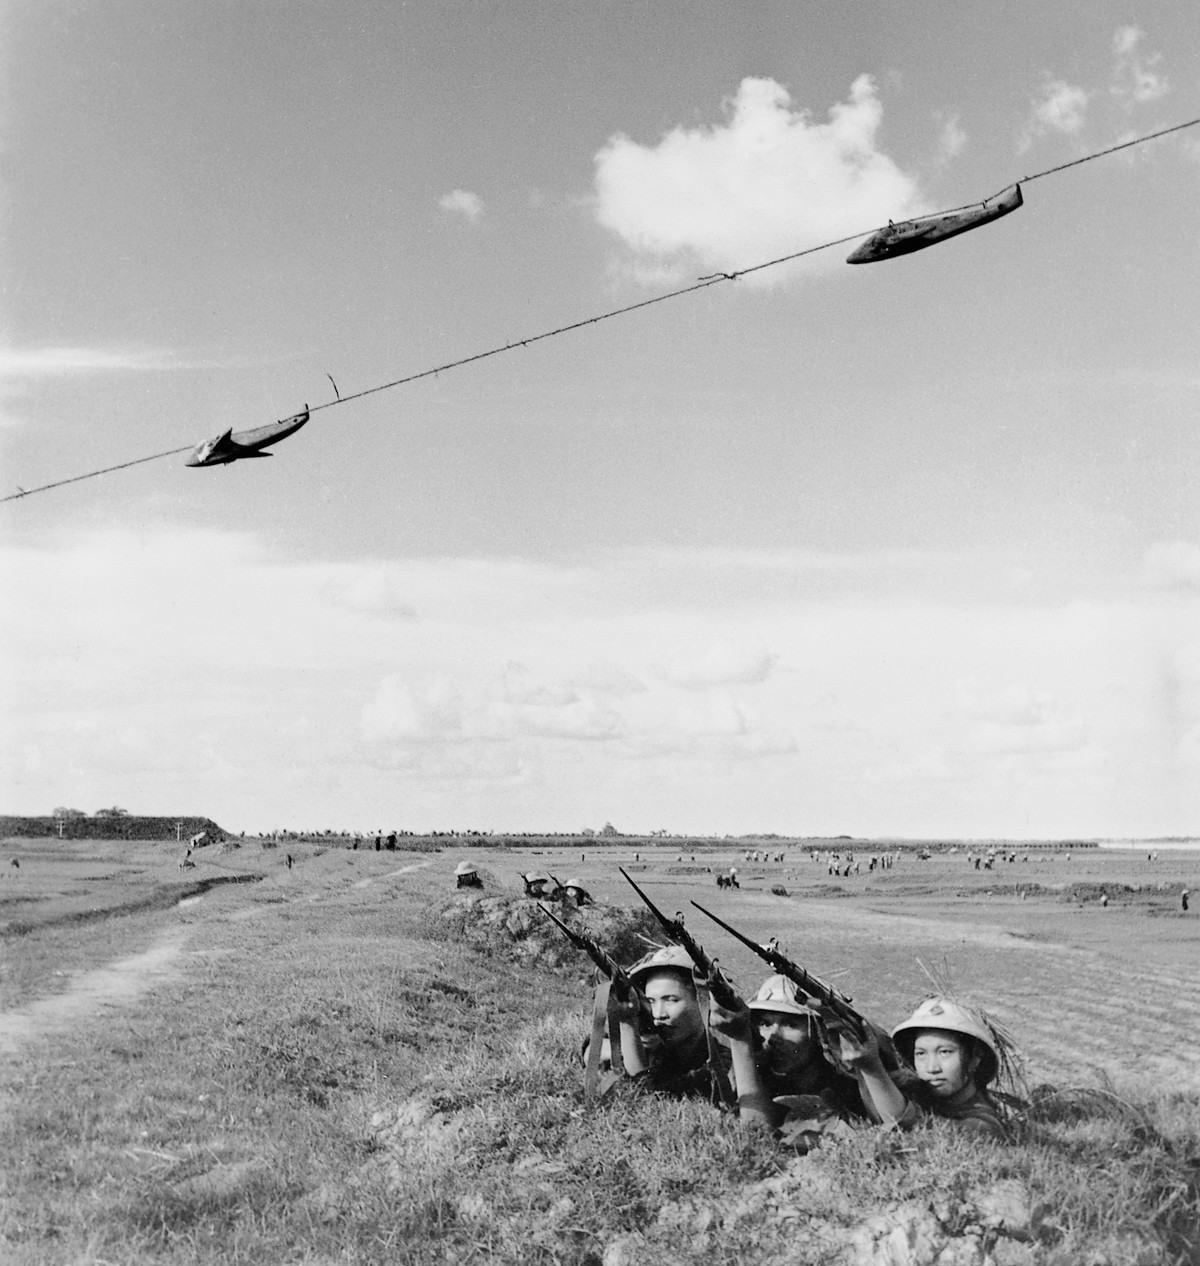 1965 - A 6ª companhia do exército vietnamita treina a pontaria contra alvos aéreos. Mesmo com antiquadas armas usadas na II Guerra Munidial, os guerrilheiros conseguiram derrubar diversos aviões americanos (Foto: Divulgação)